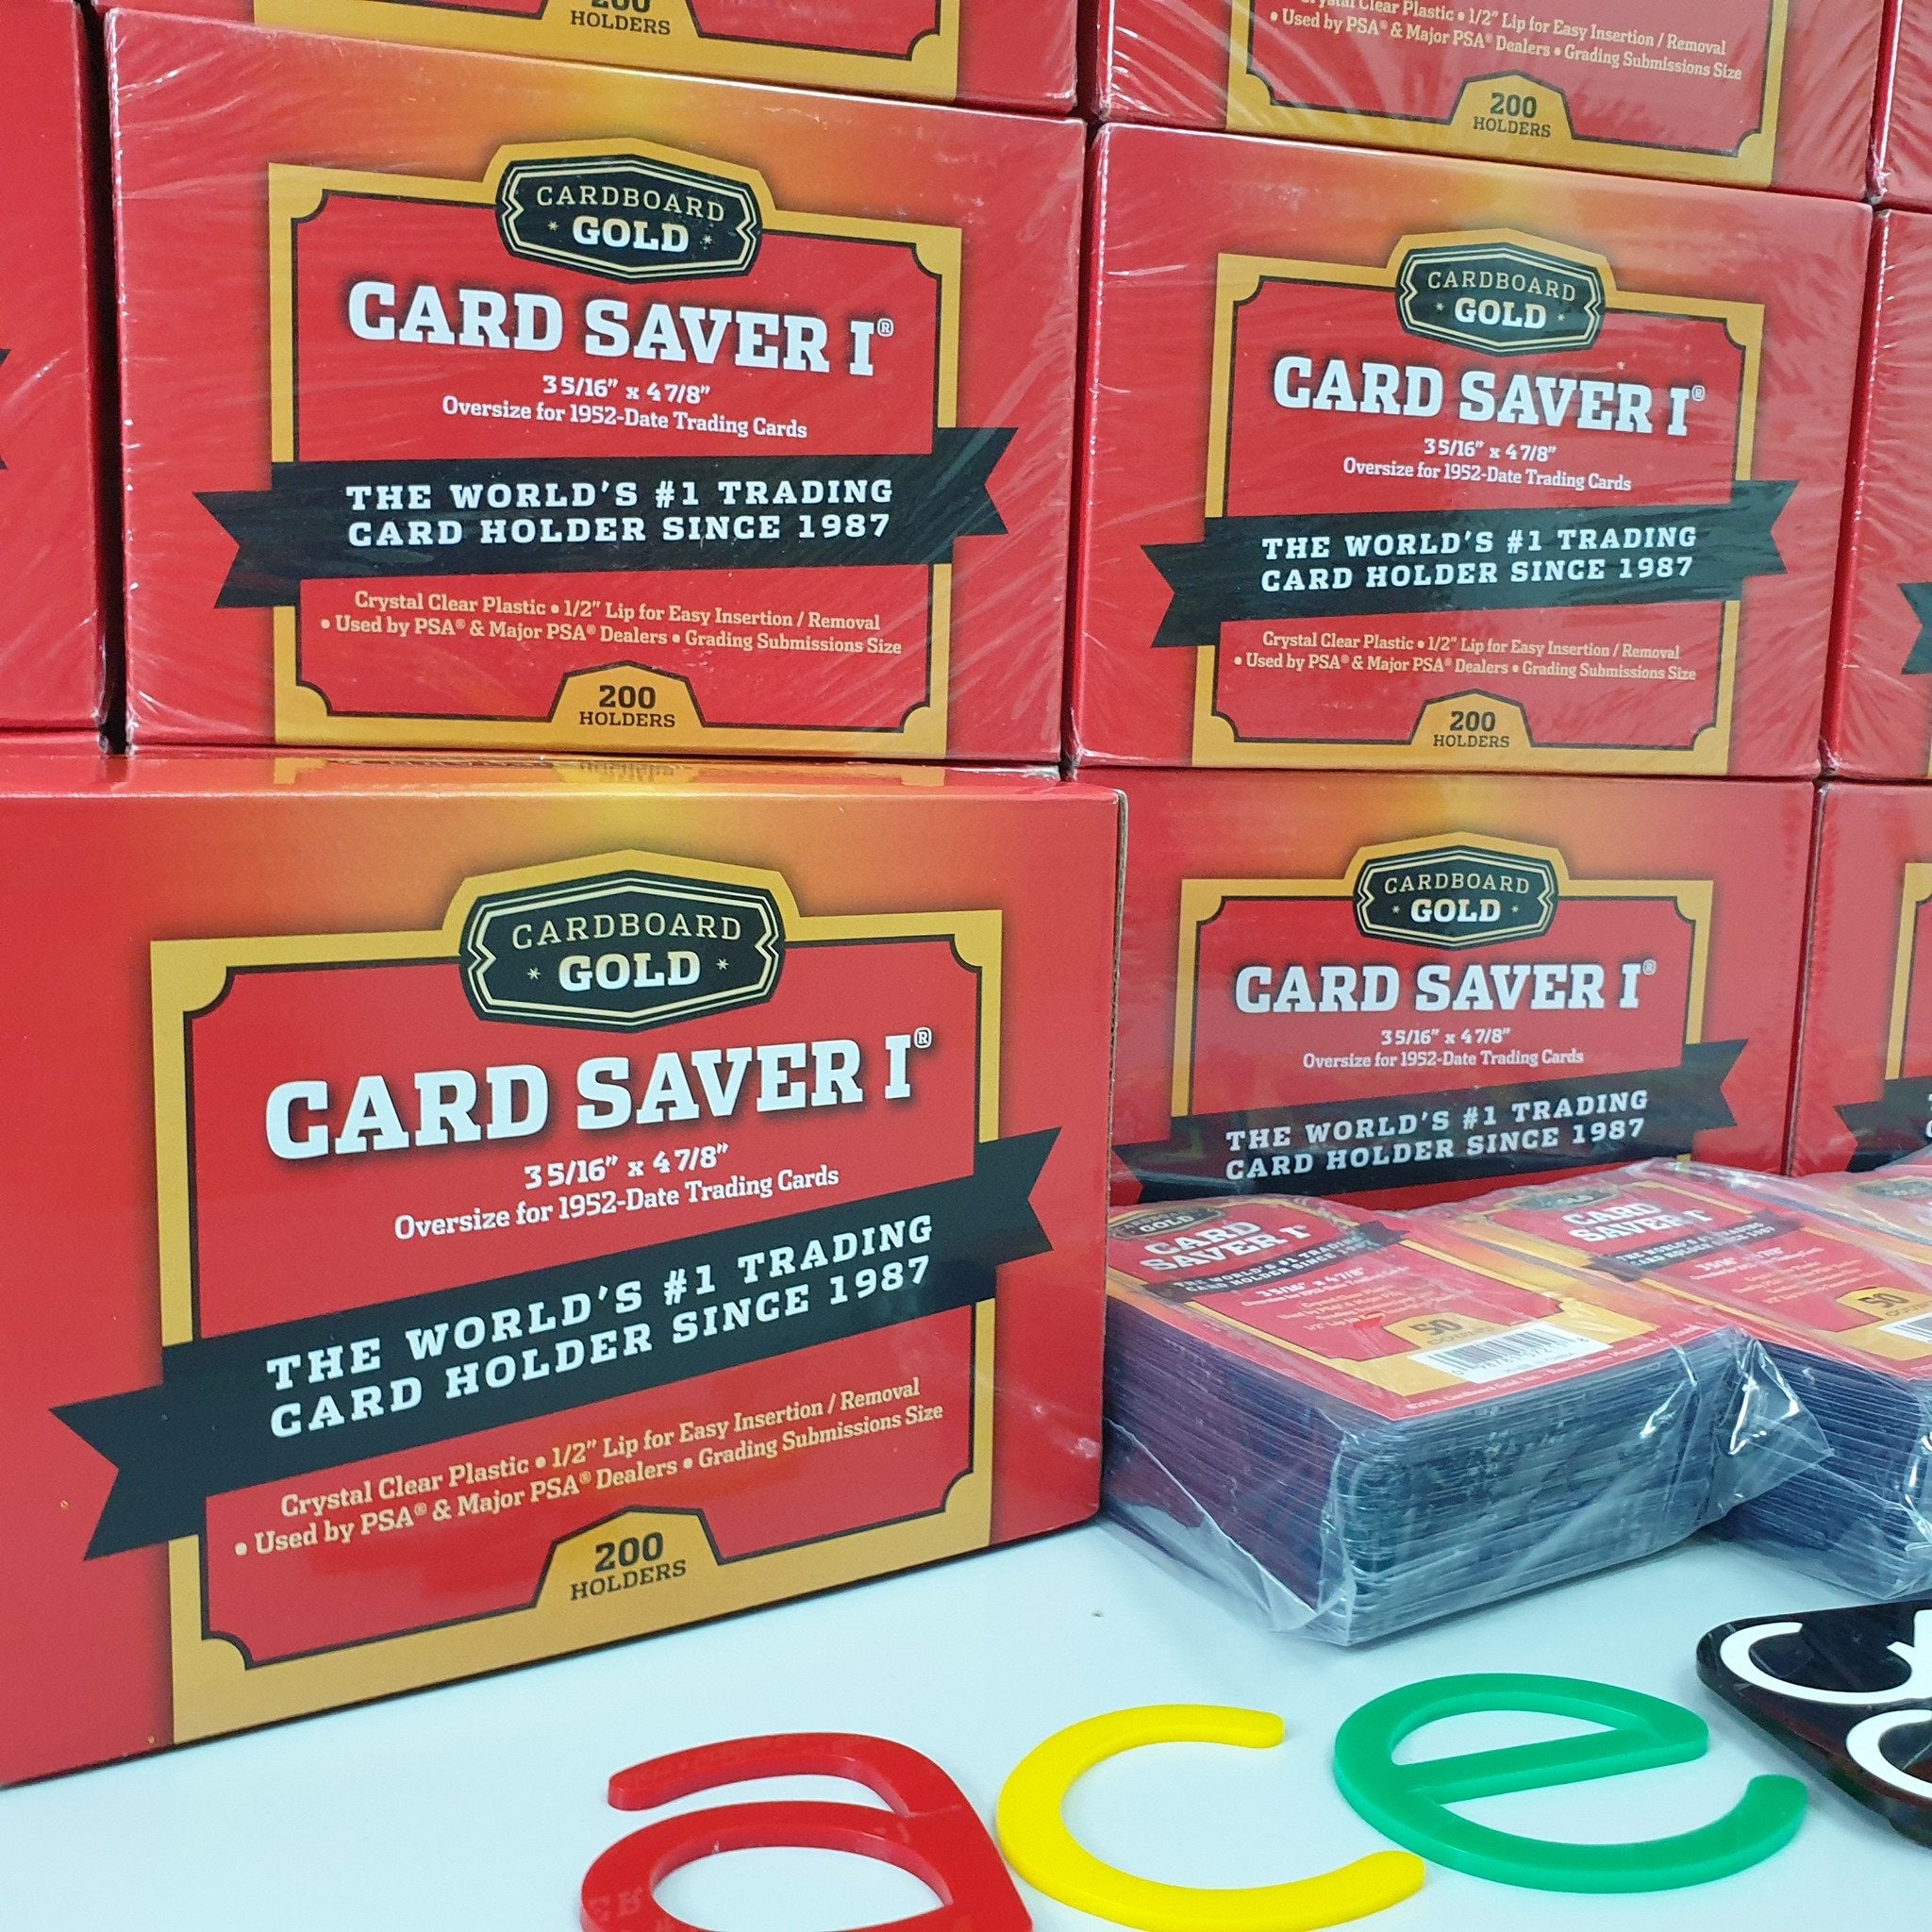 Cardboard Gold - Card Saver 1 - 50 komada